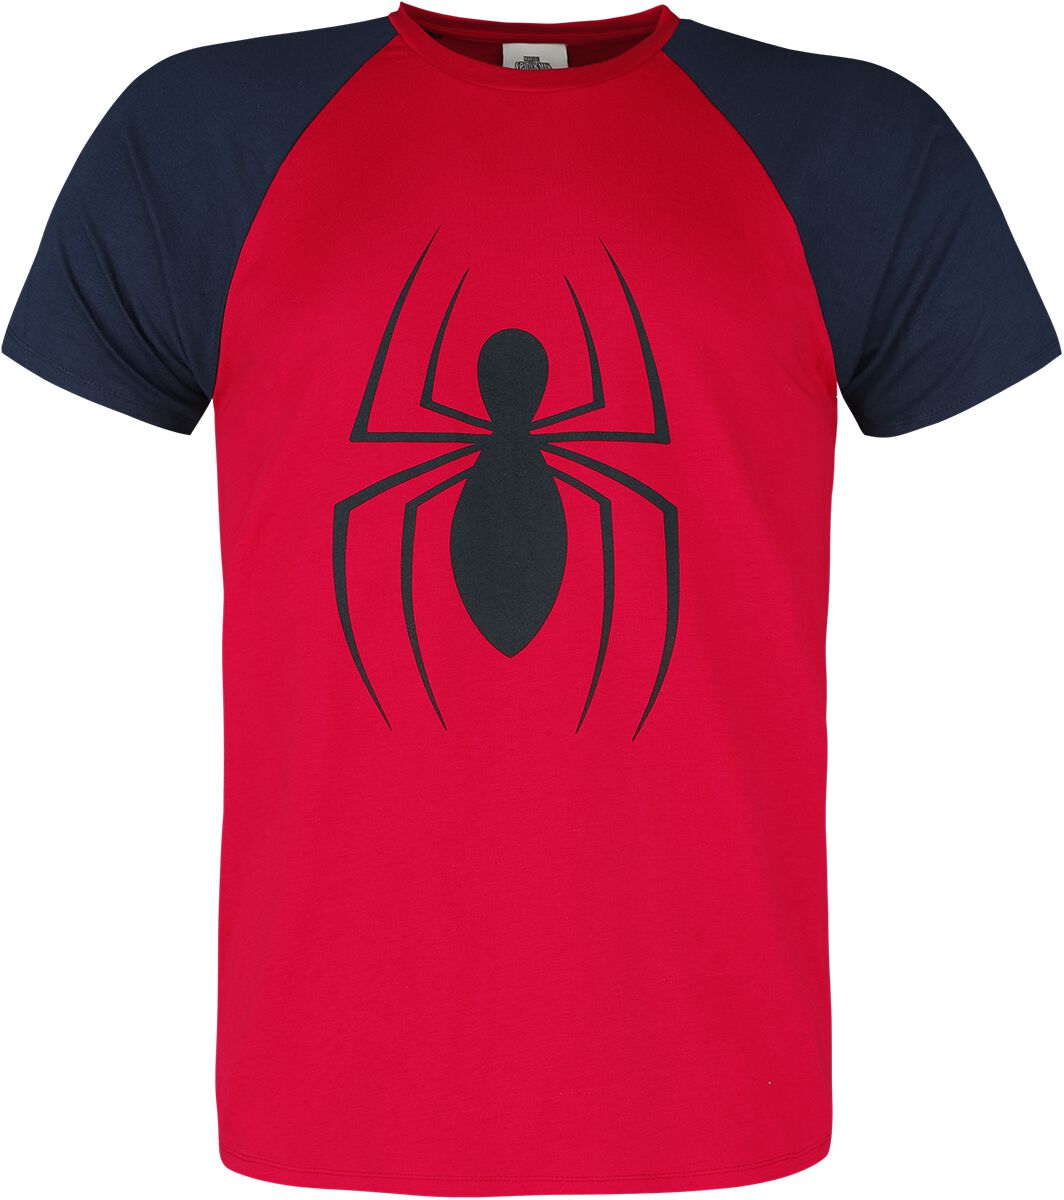 T-Shirt Manches courtes de Spider-Man - Logo - S à 3XL - pour Homme - rouge/bleu